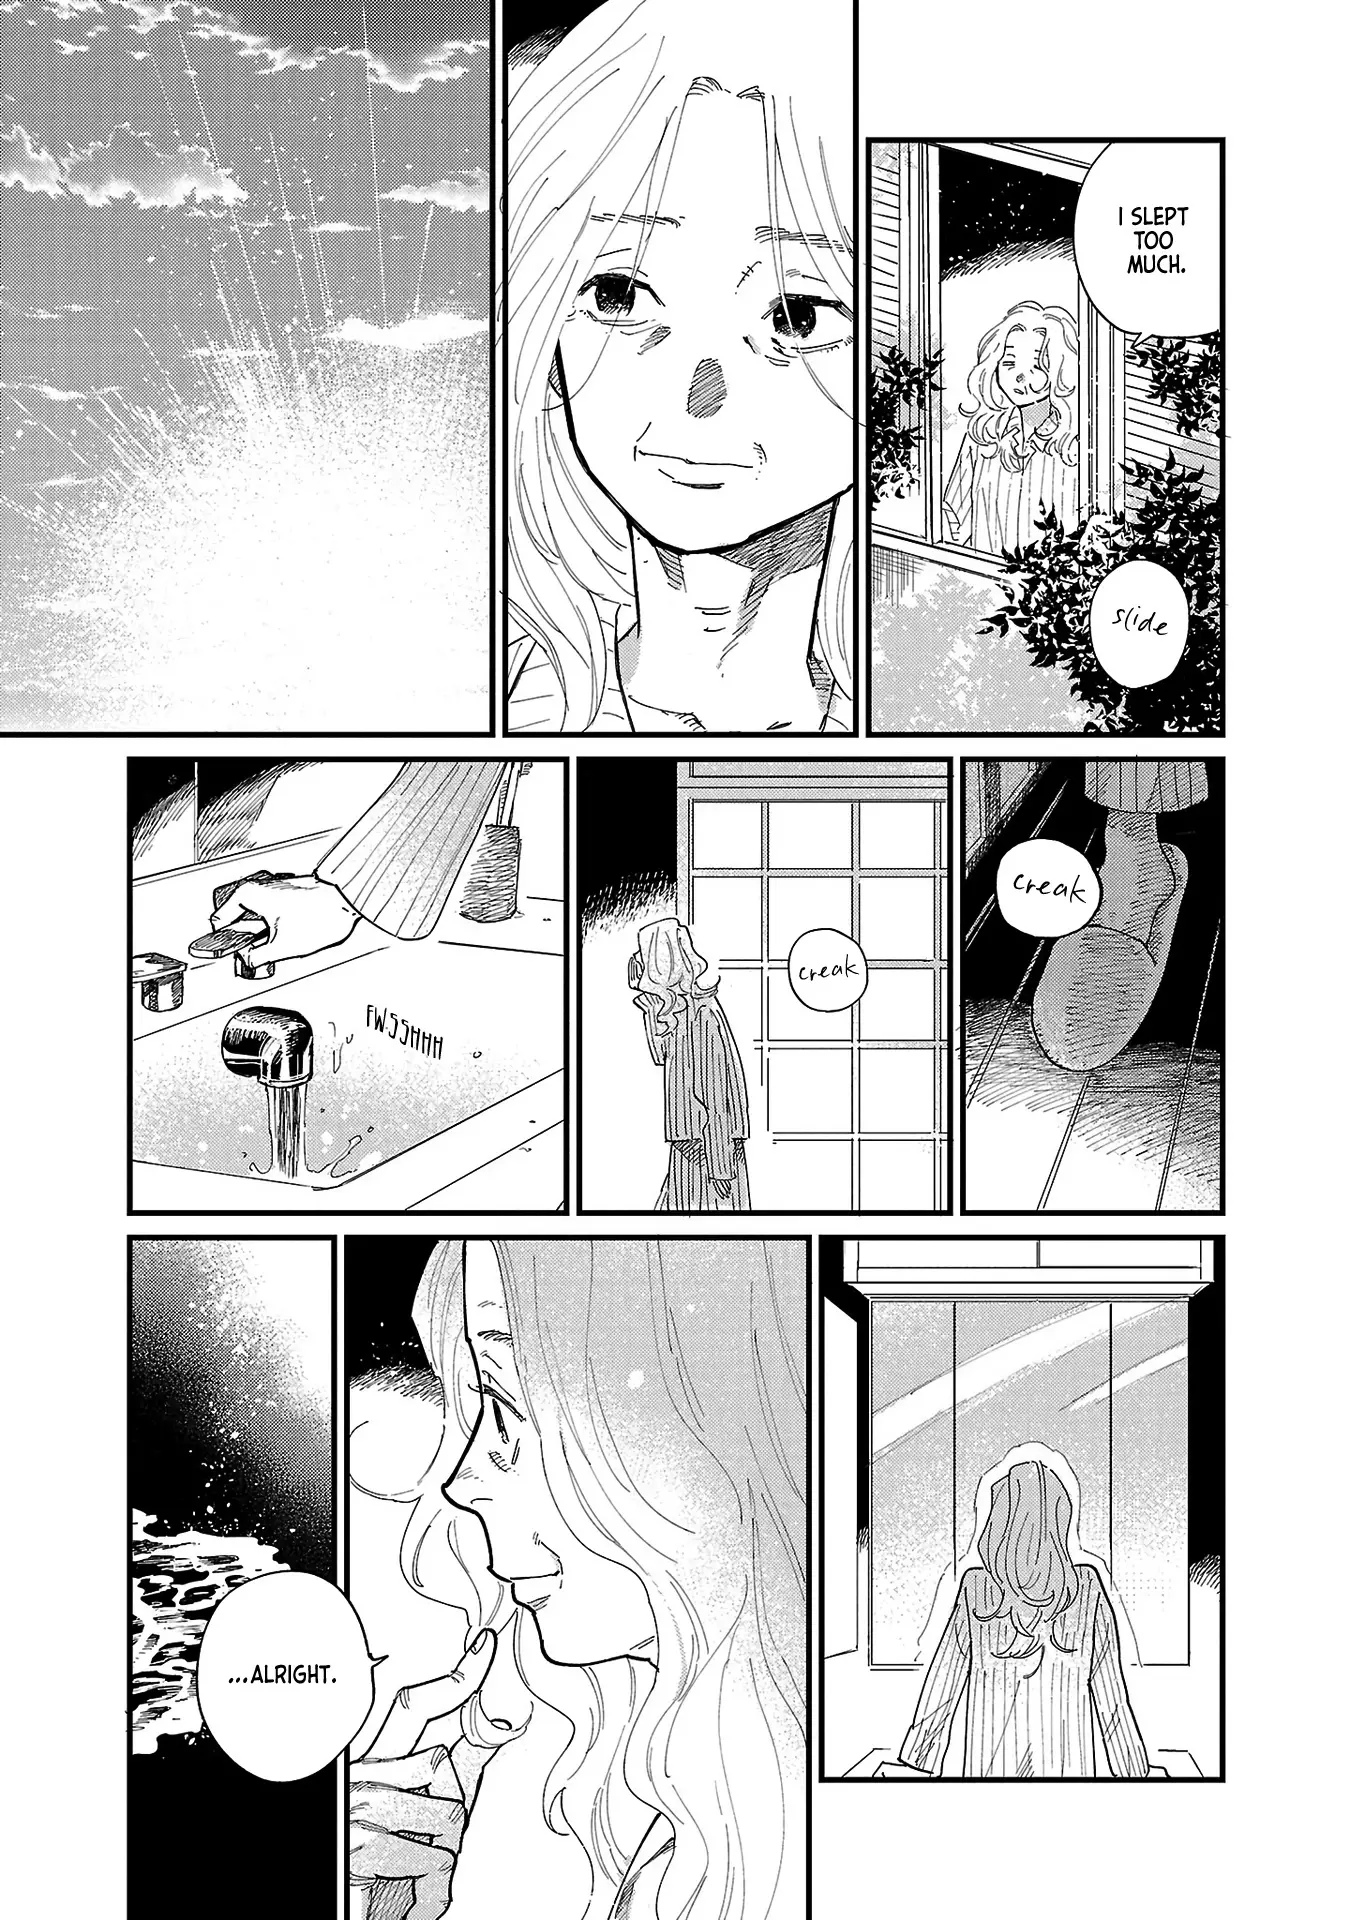 Umi Ga Hashiru End Roll - 2 page 31-e82c94f1